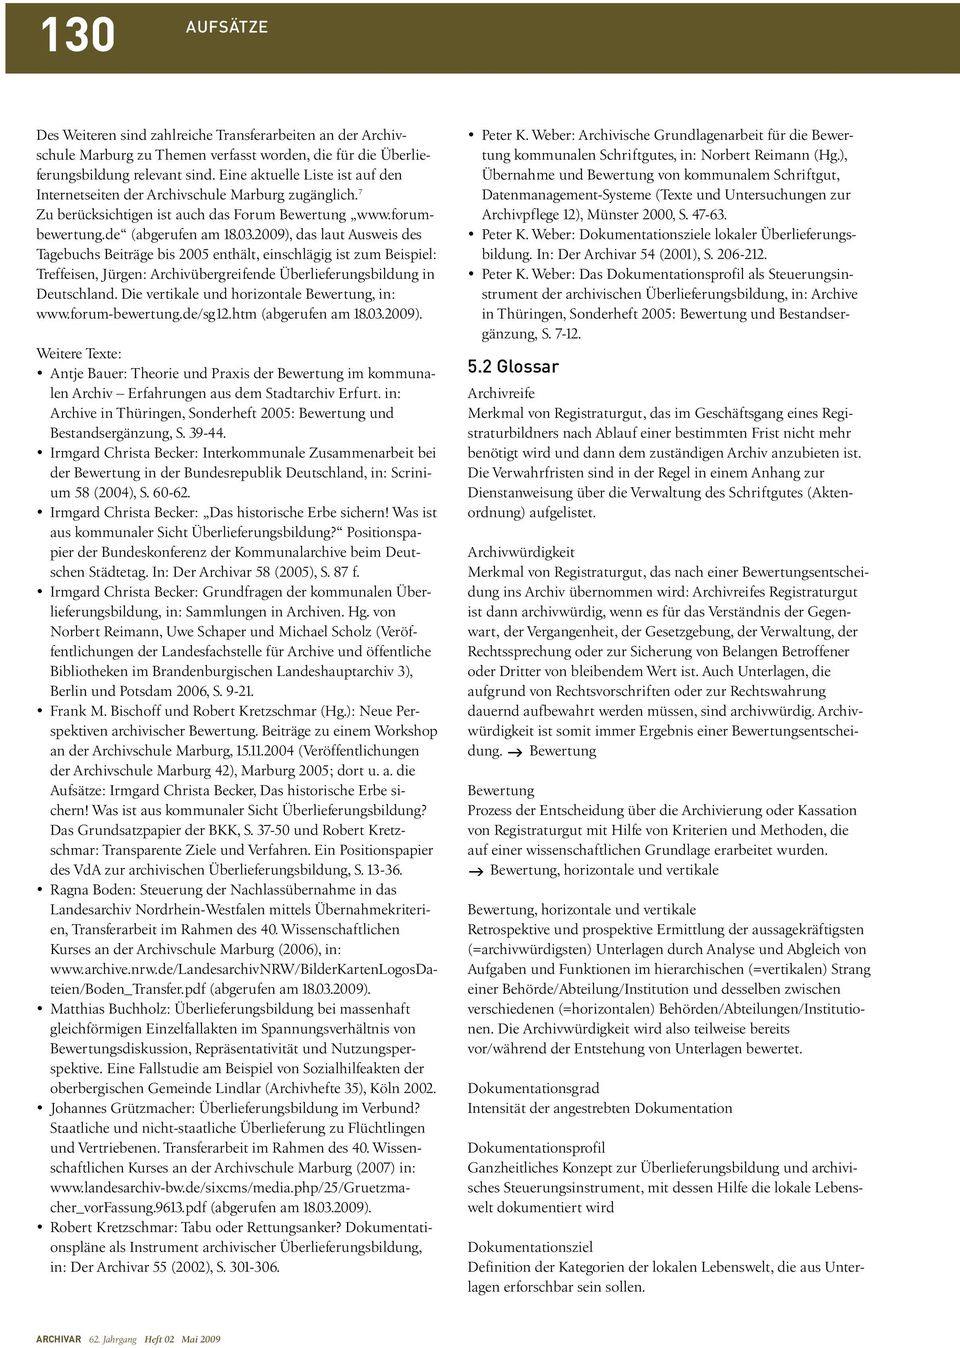 2009), das laut Ausweis des Tagebuchs Beiträge bis 2005 enthält, einschlägig ist zum Beispiel: Treffeisen, Jürgen: Archivübergreifende Überlieferungsbildung in Deutschland.